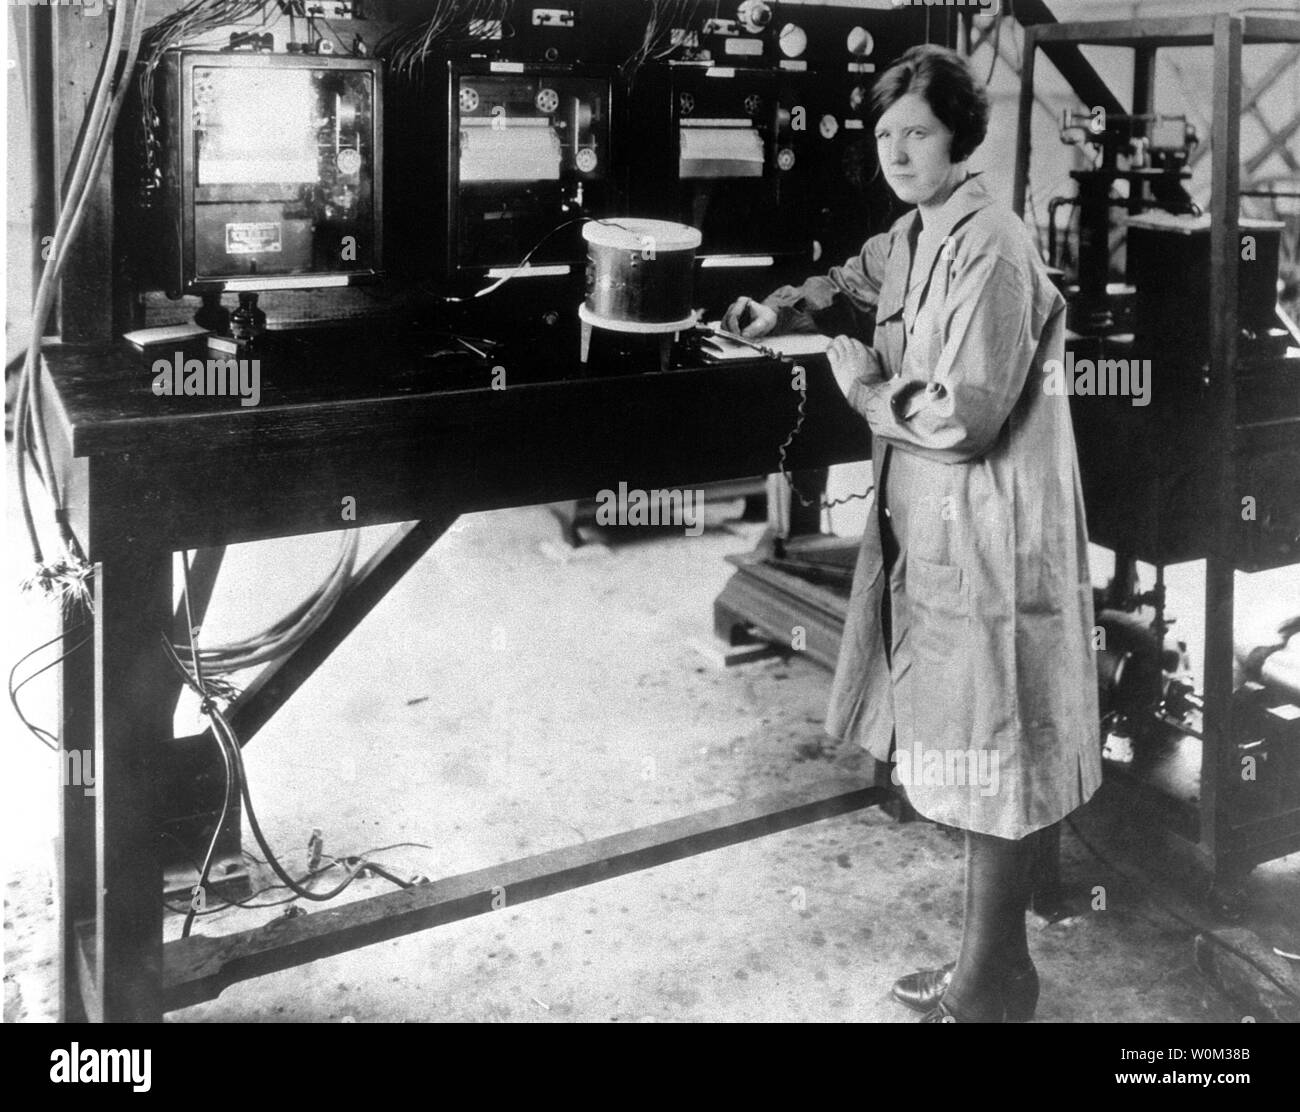 In diesem März 29, 1929, Foto, Pearl I. Junge arbeitet in der Langley Memorial Aeronautical Laboratory's Flight Instrumentation Facility (Gebäude 1202). Junge war die erste Frau, die Angestellt als technischer Mitarbeiter, Physiker an der Nationalen Beratenden Ausschuss für die Luft- und Raumfahrt (NACA) und der zweite weibliche Physiker arbeiten für die Bundesregierung. Frau Junge graduierte 1919 von der Universität von North Dakota (UND) als Phi Beta Kappa mit einem dreifachen Major in Physik, Mathematik und Chemie. 1922 nahm sie einen Termin in Langley Memorial Aeronautical des NACA Labor (n Stockfoto